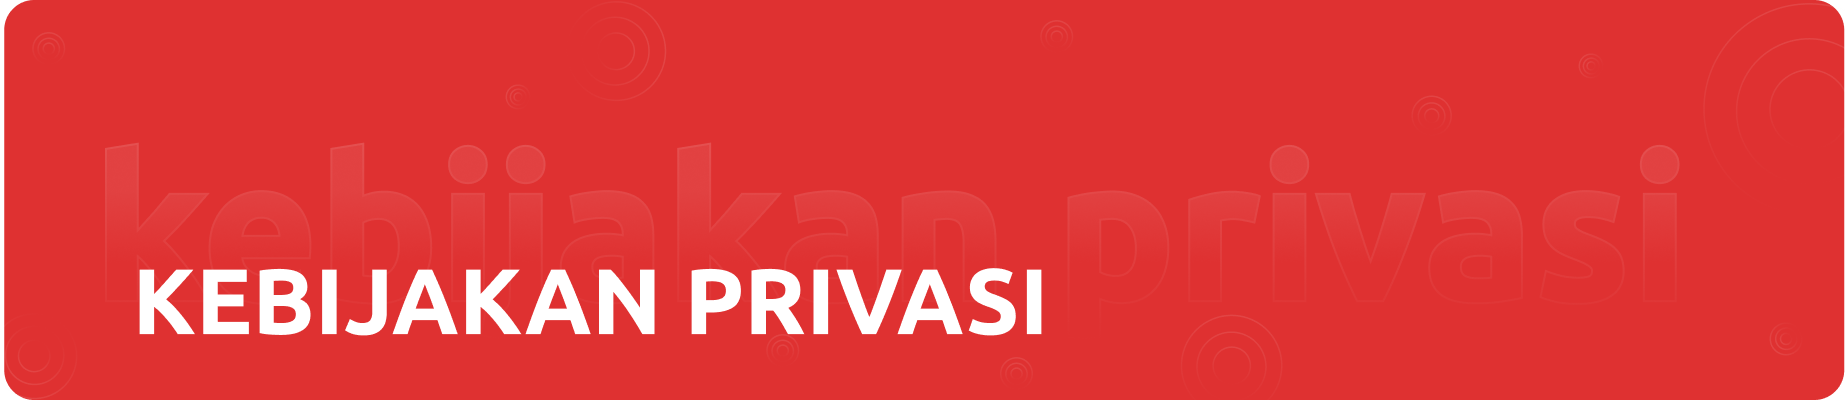 kebijakan_privasi.png